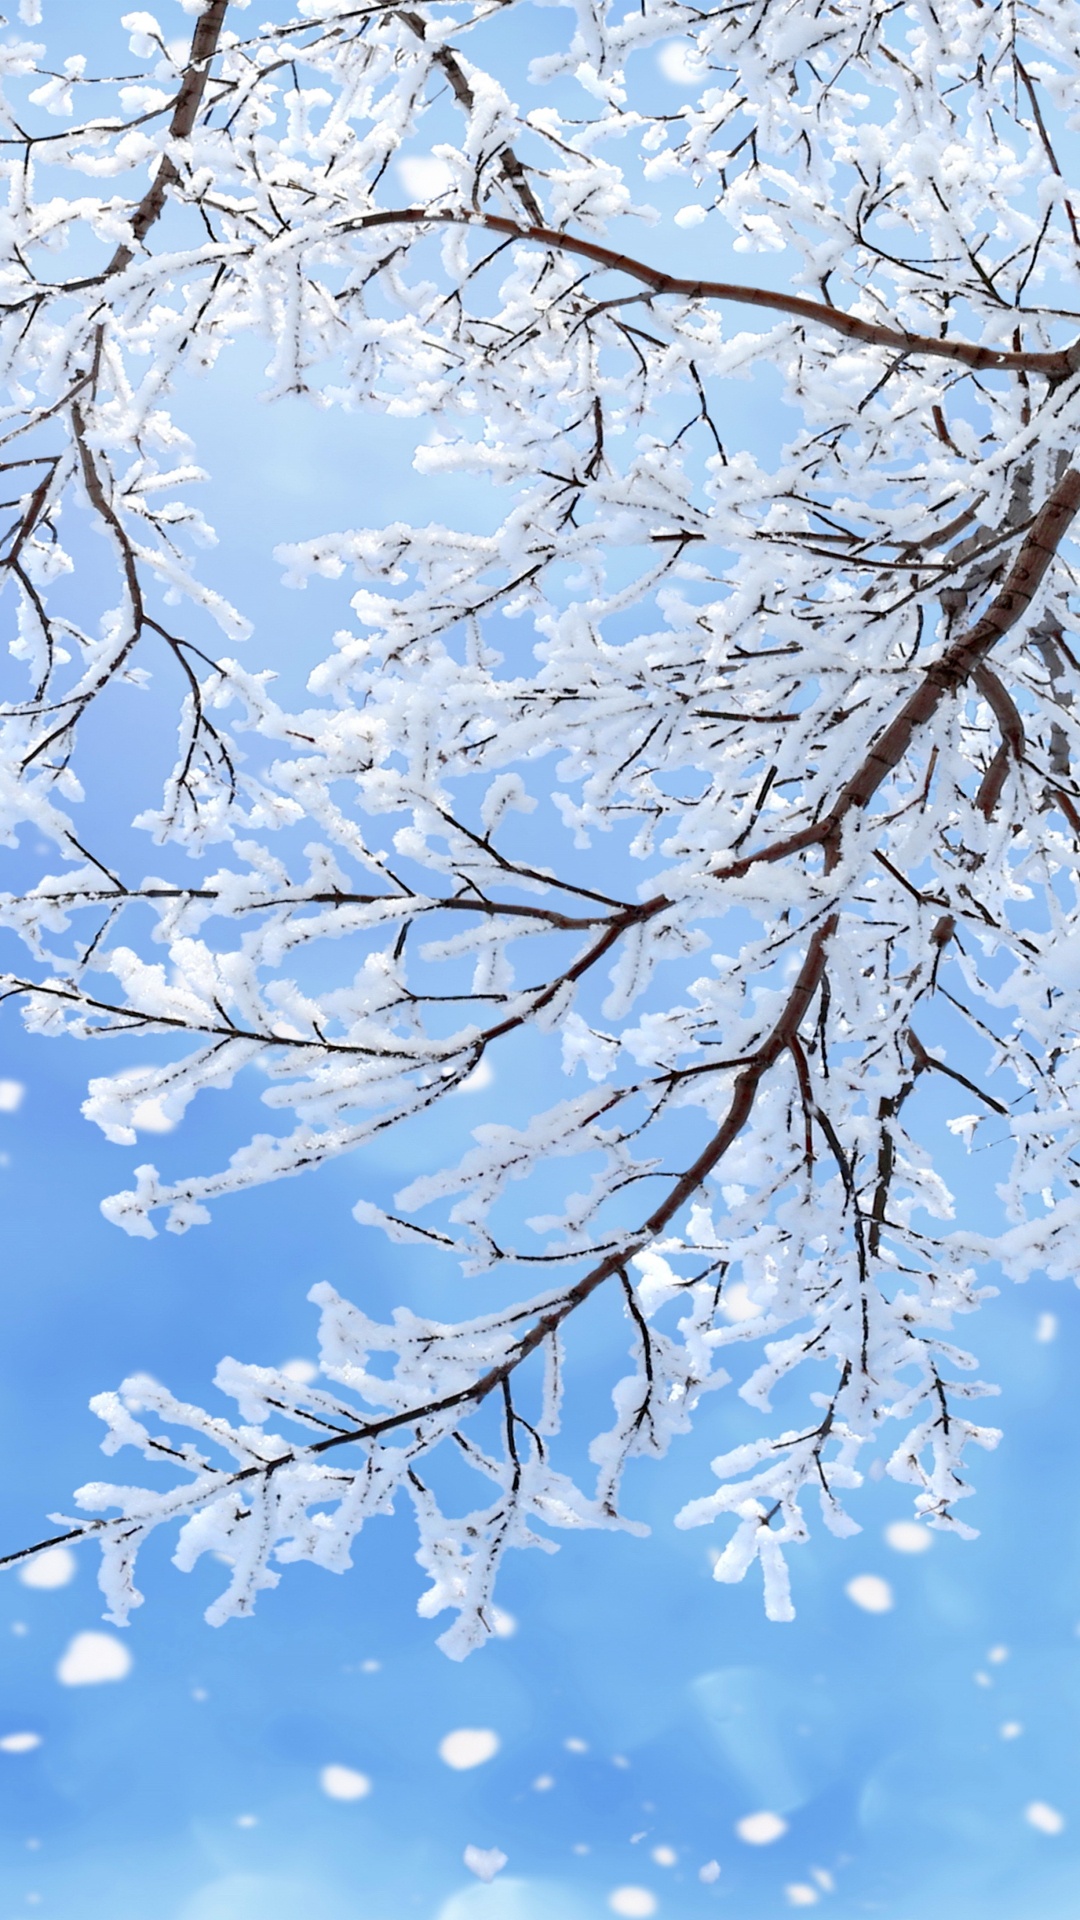 冬天, 树枝, 雪花, 季节, 冻结 壁纸 1080x1920 允许